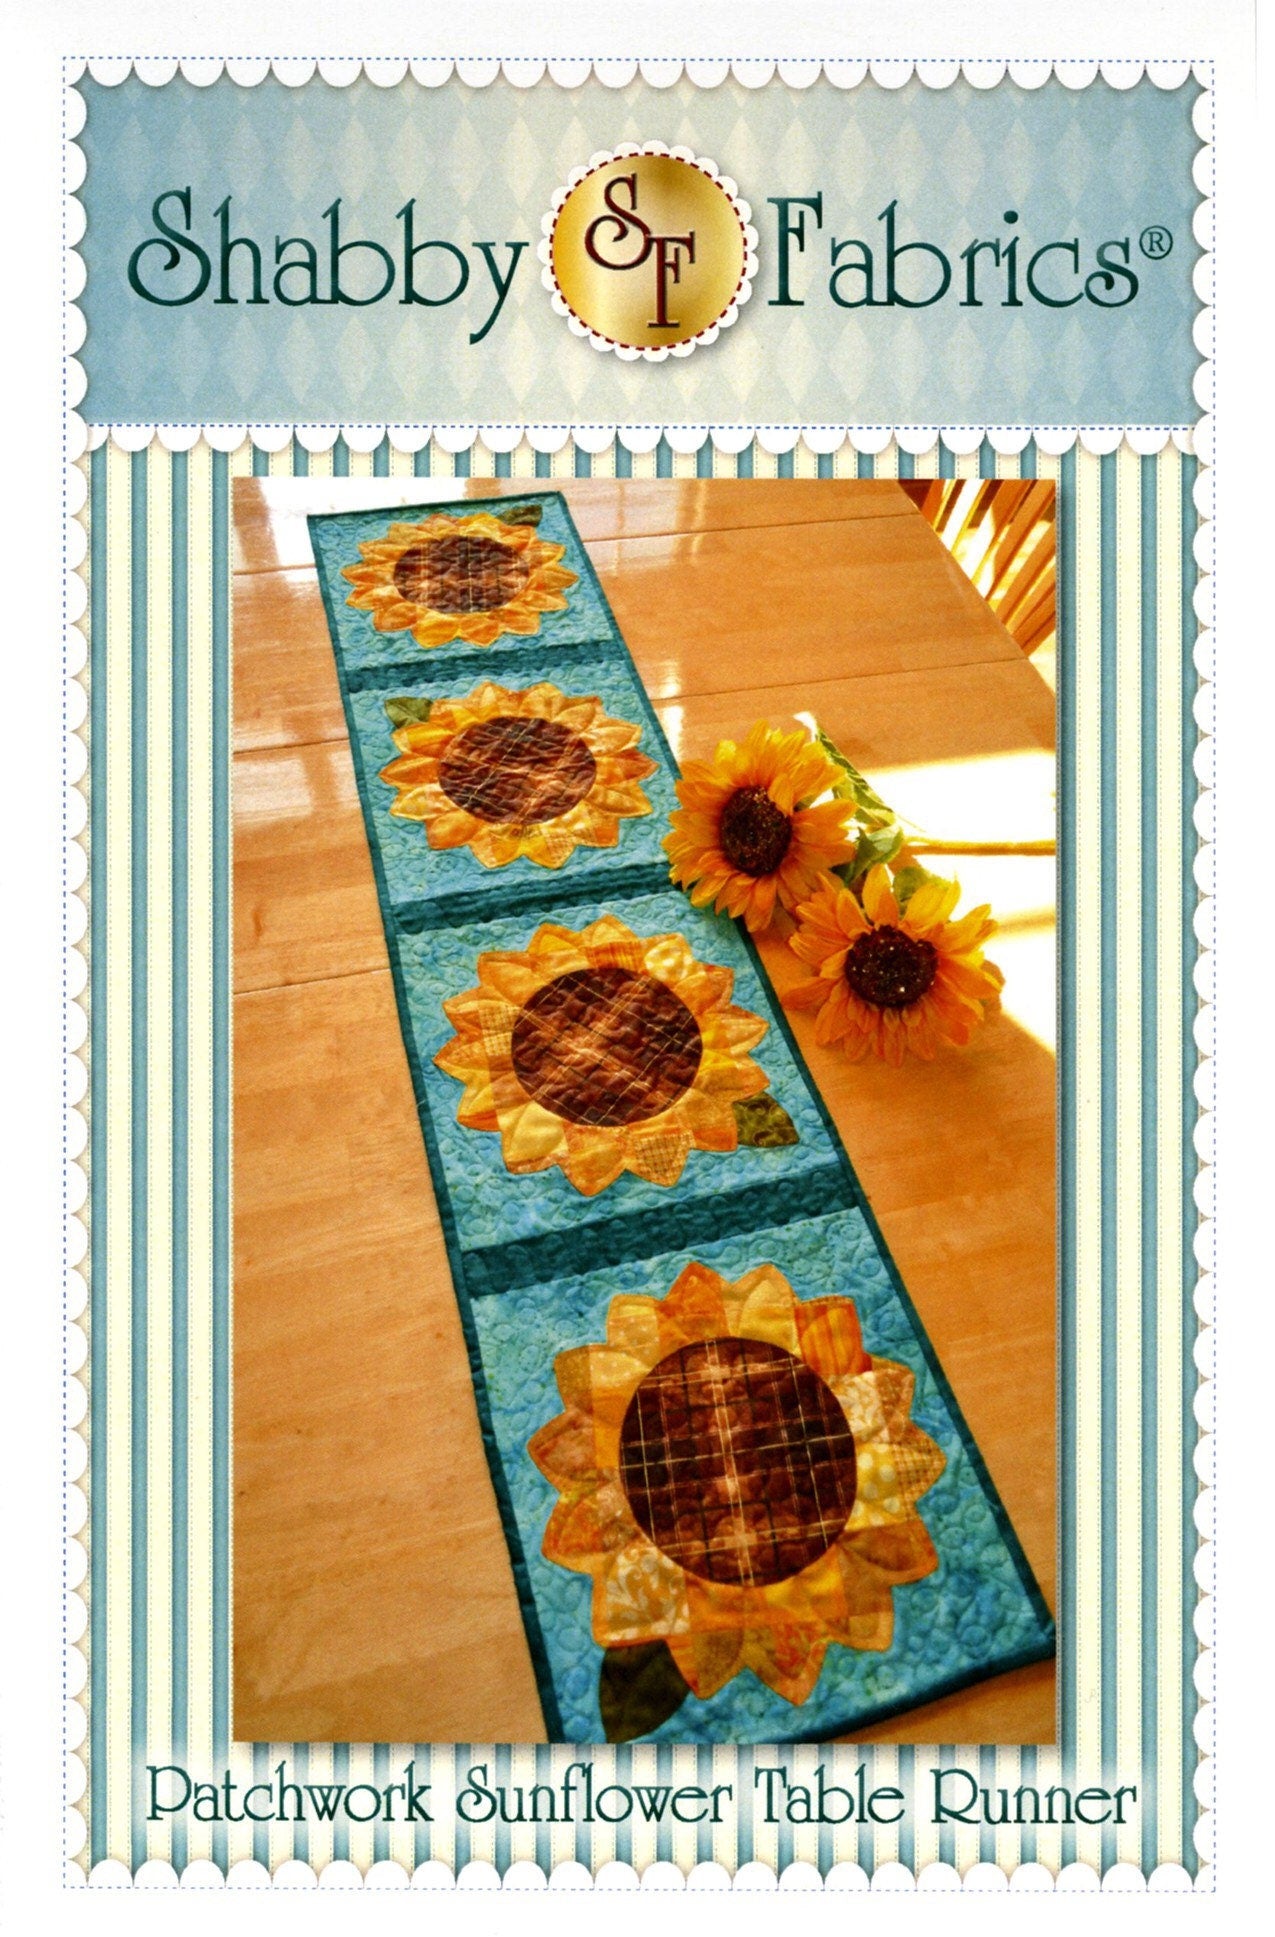 Patchwork Sunflower Table Runner Pattern - Shabby Fabrics - Jennifer Bosworth - Summer Table Runner Pattern